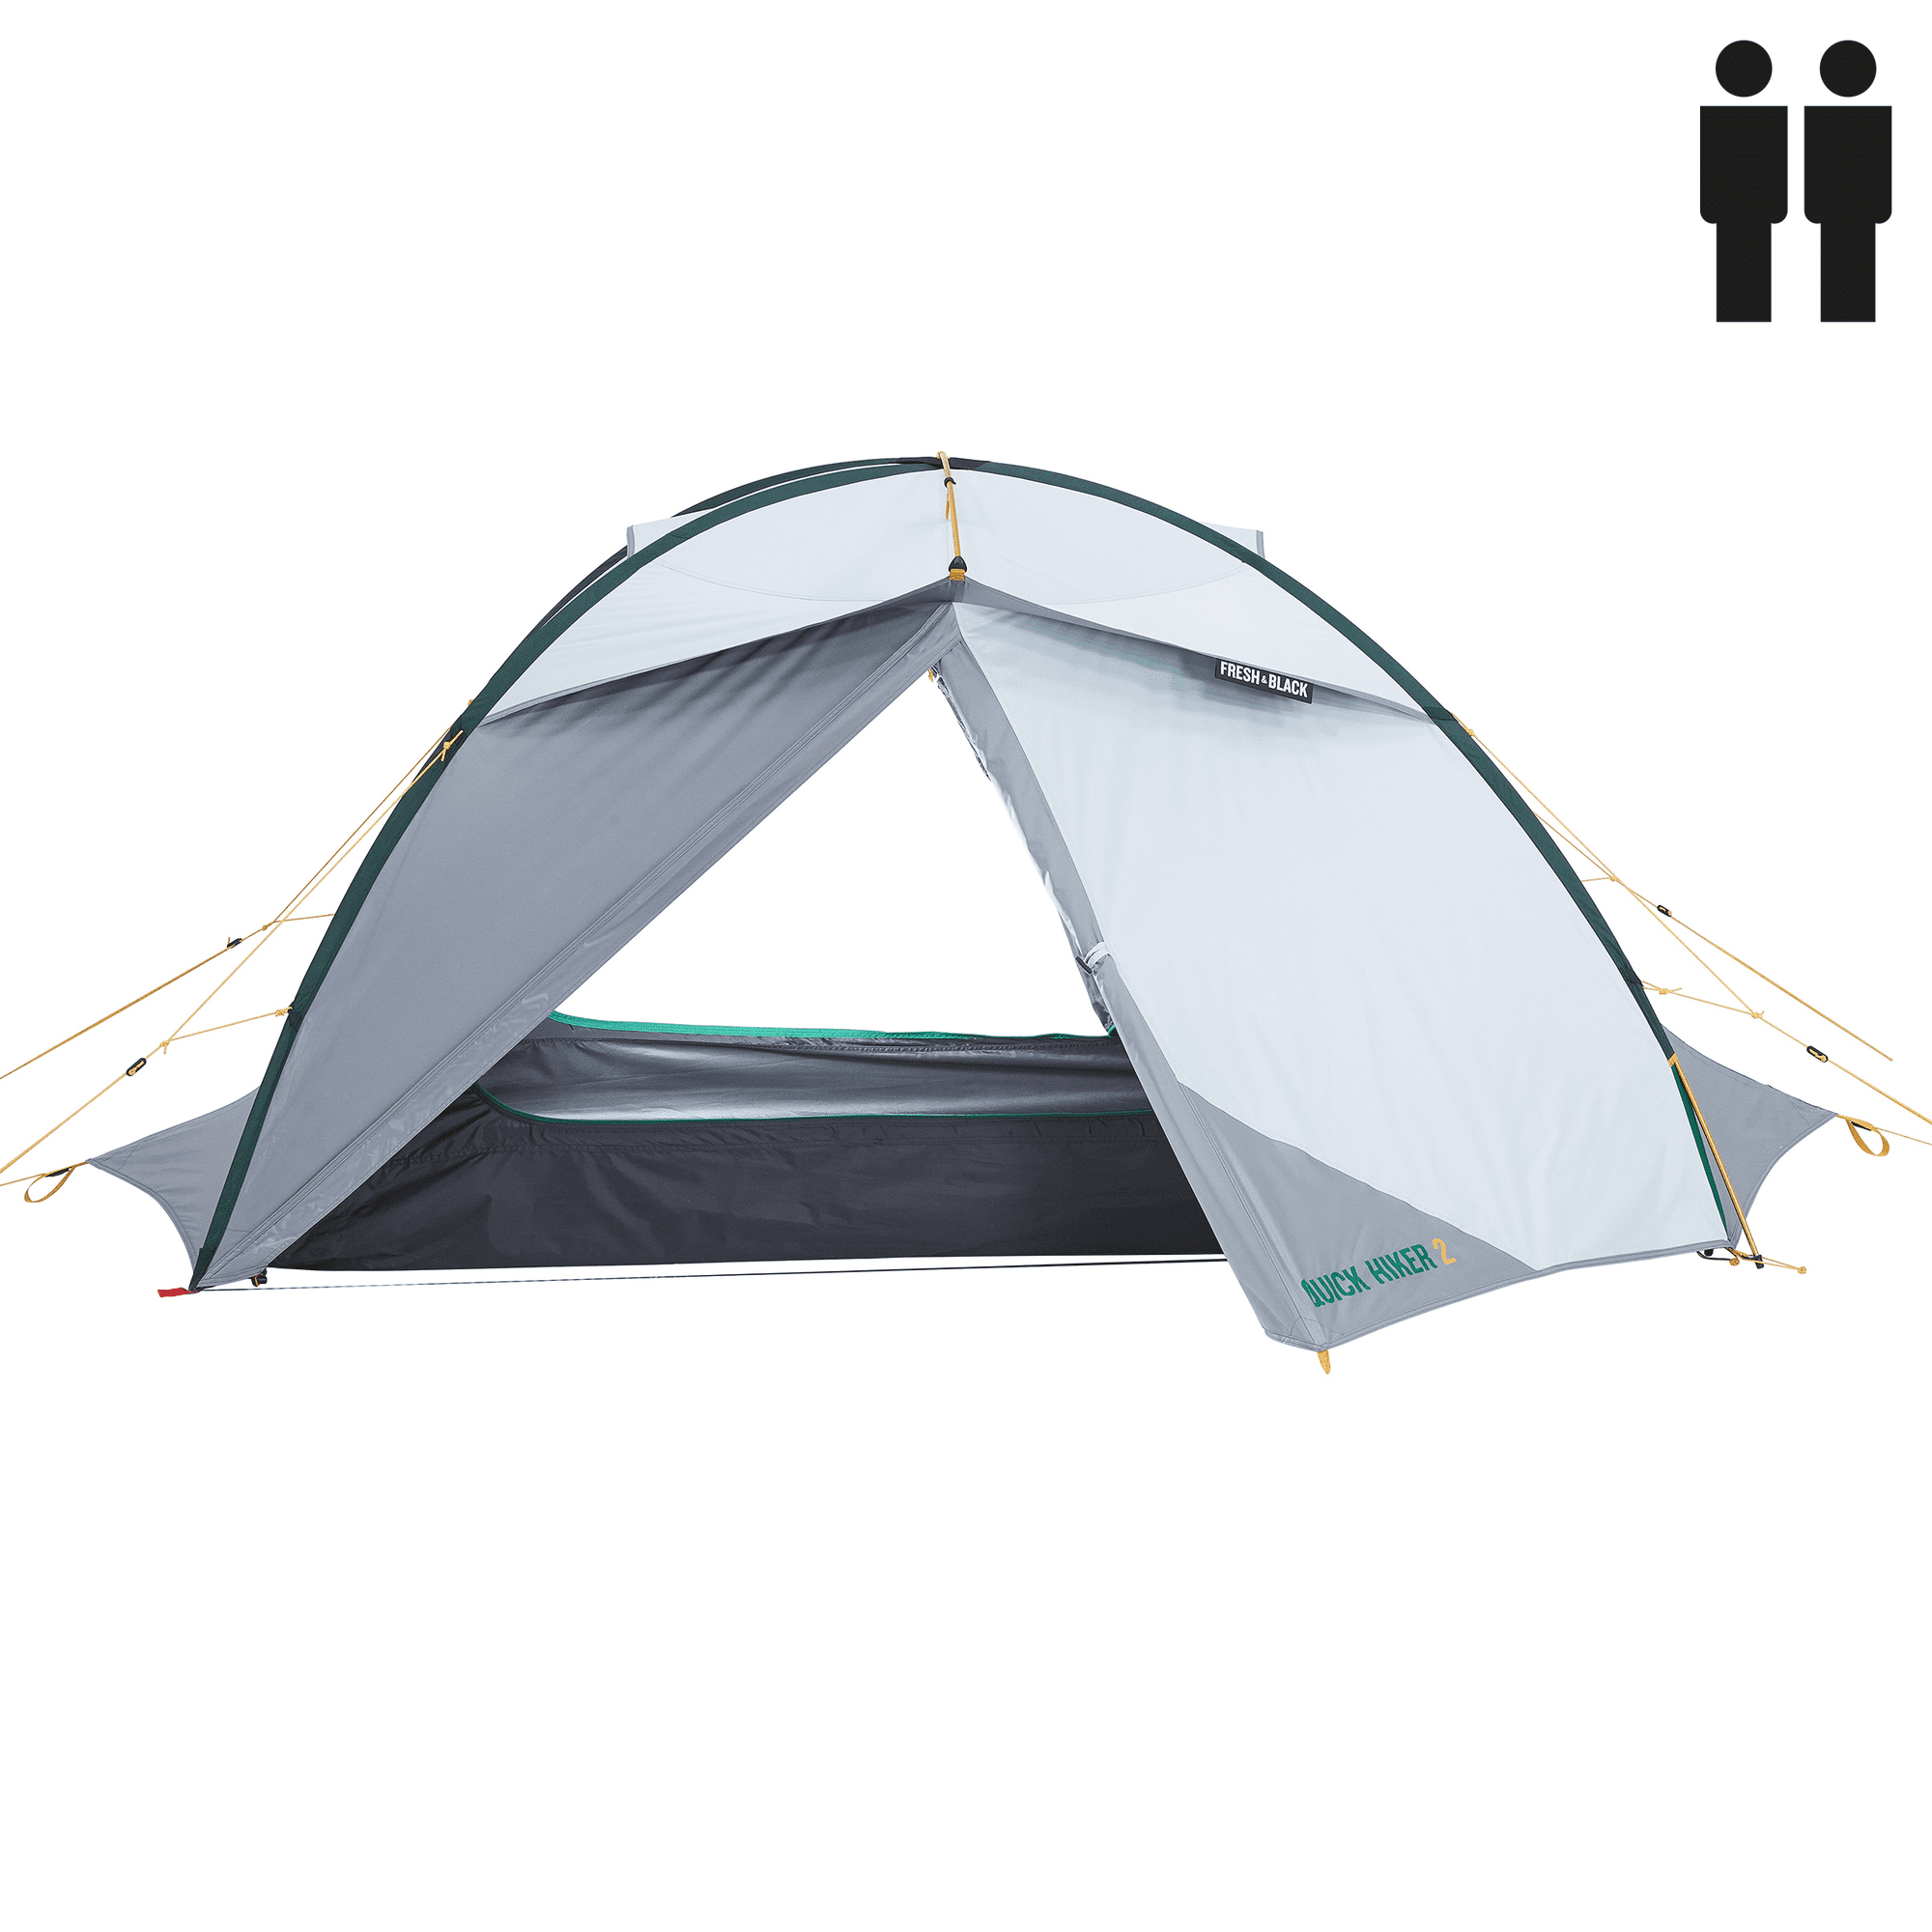 Black, Waterproof Backpacking Tent 